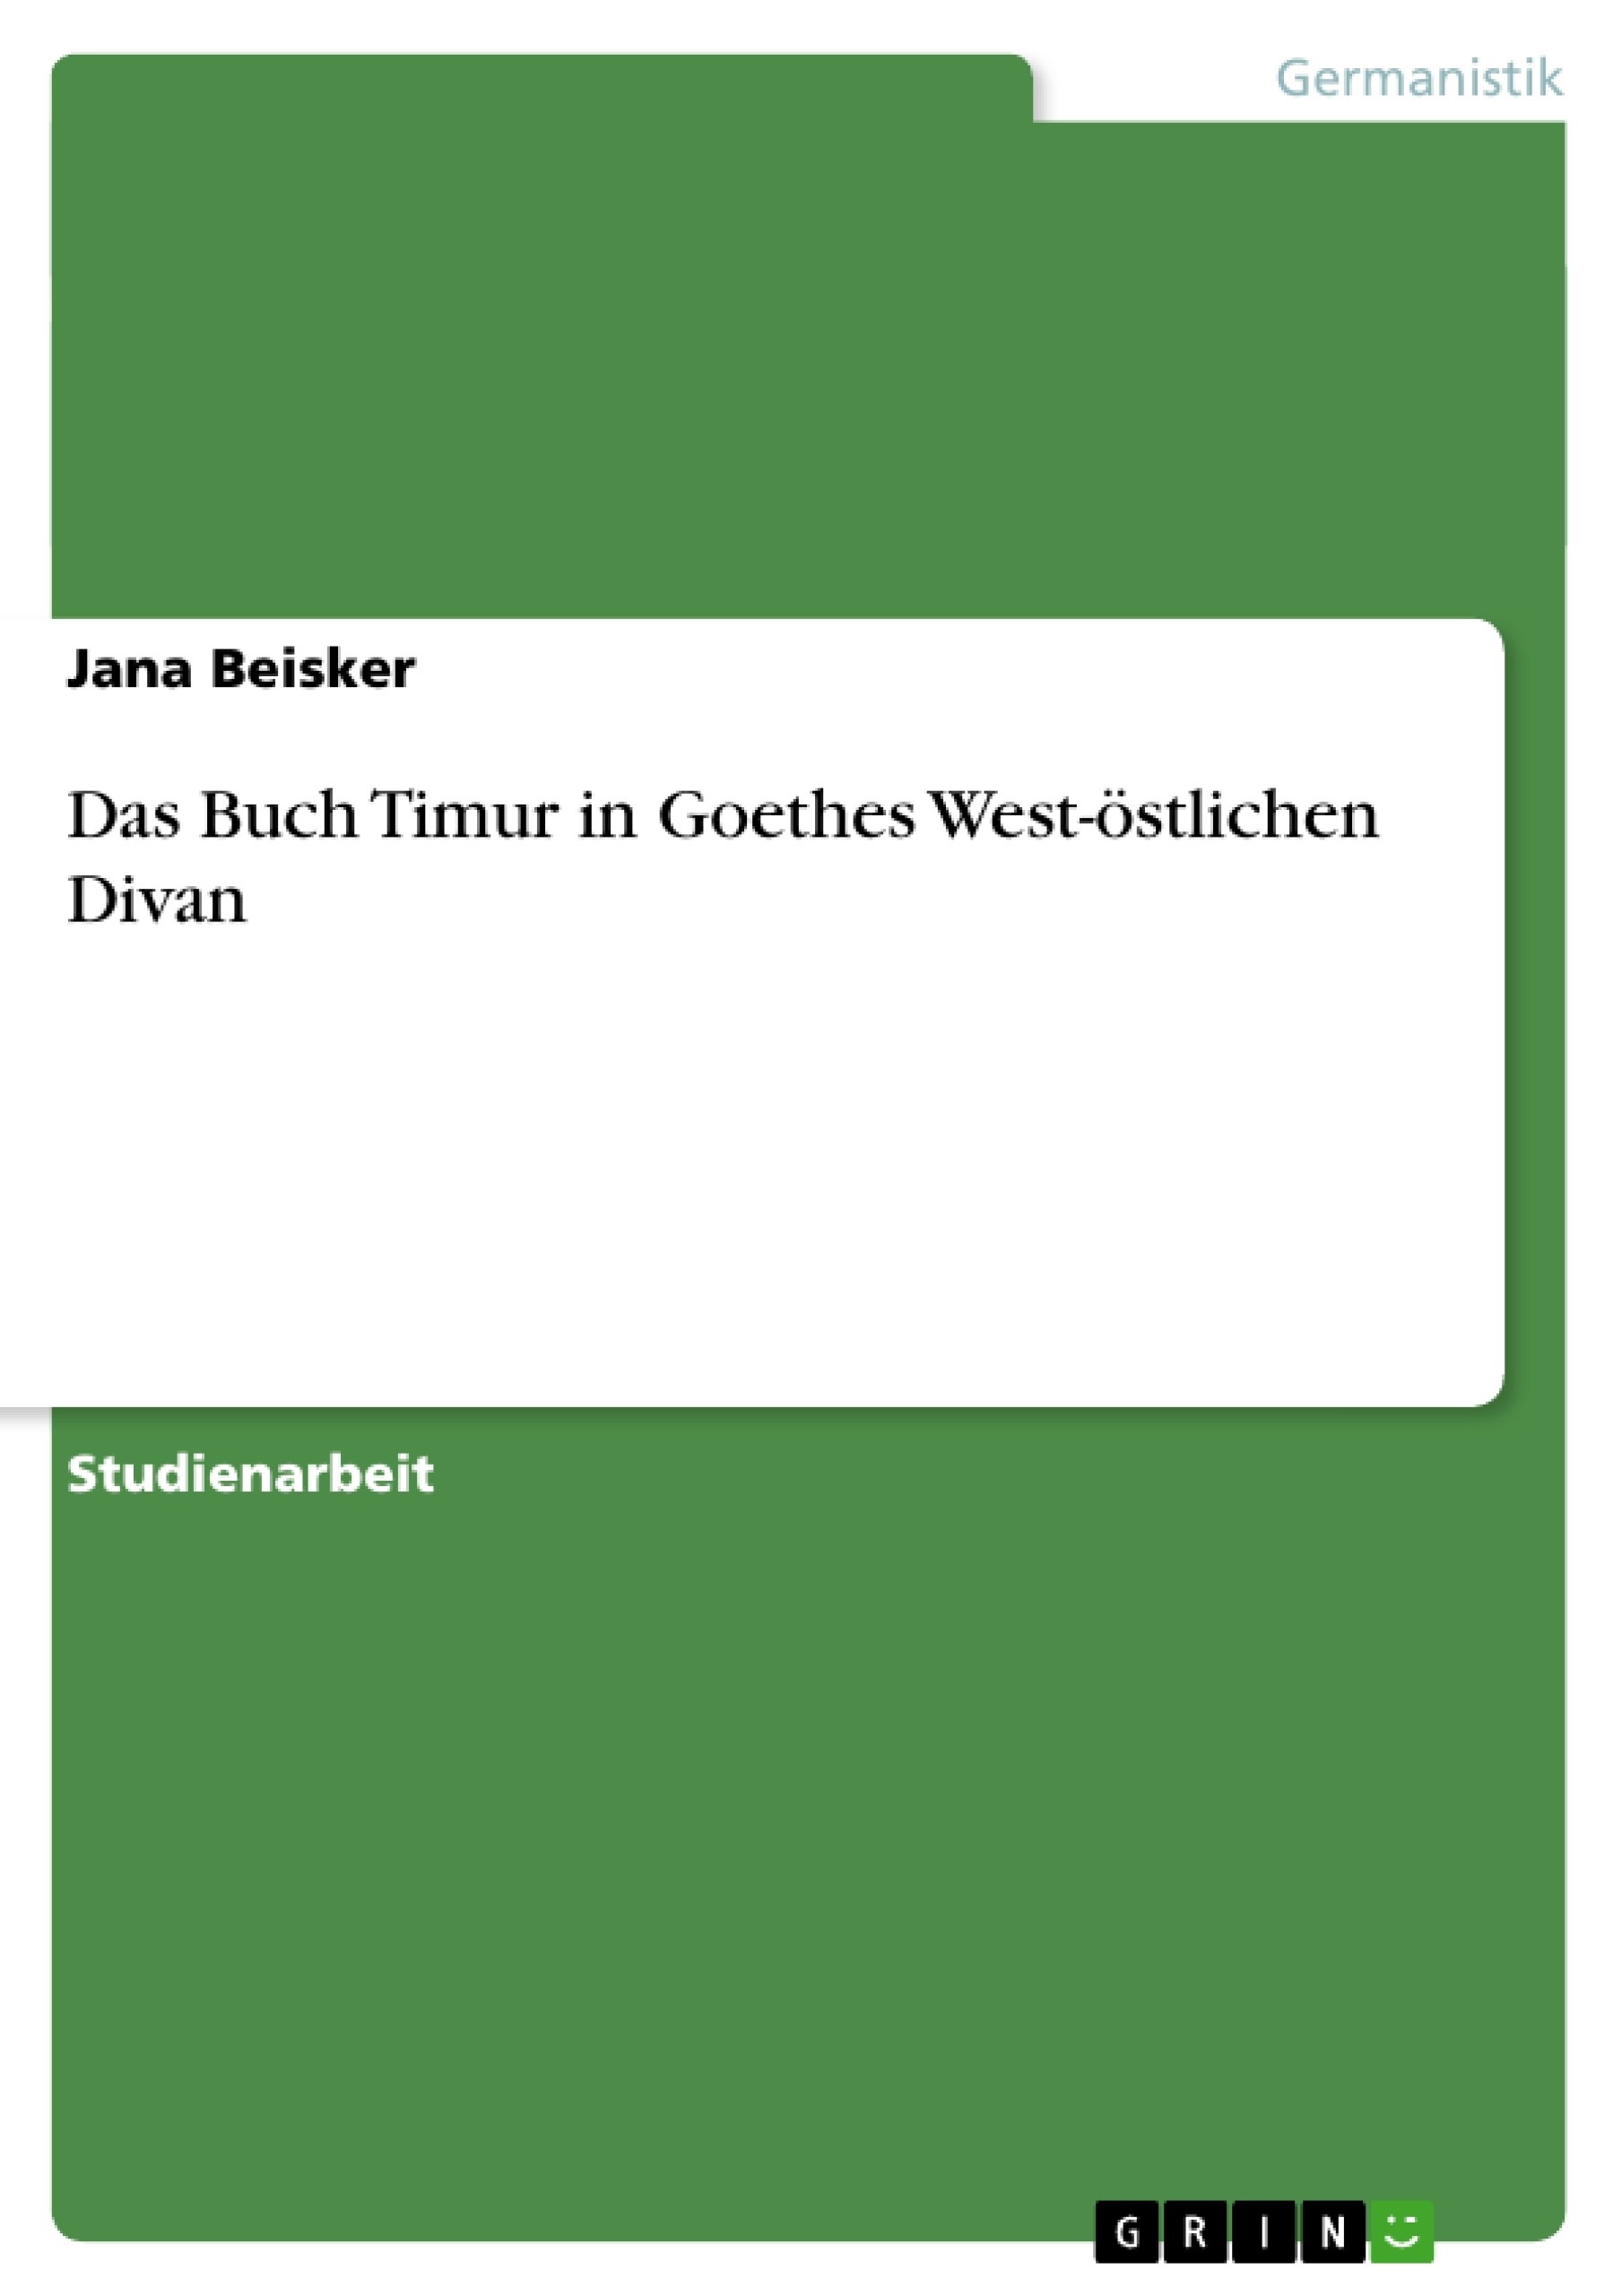 Title: Das Buch Timur in Goethes West-östlichen Divan